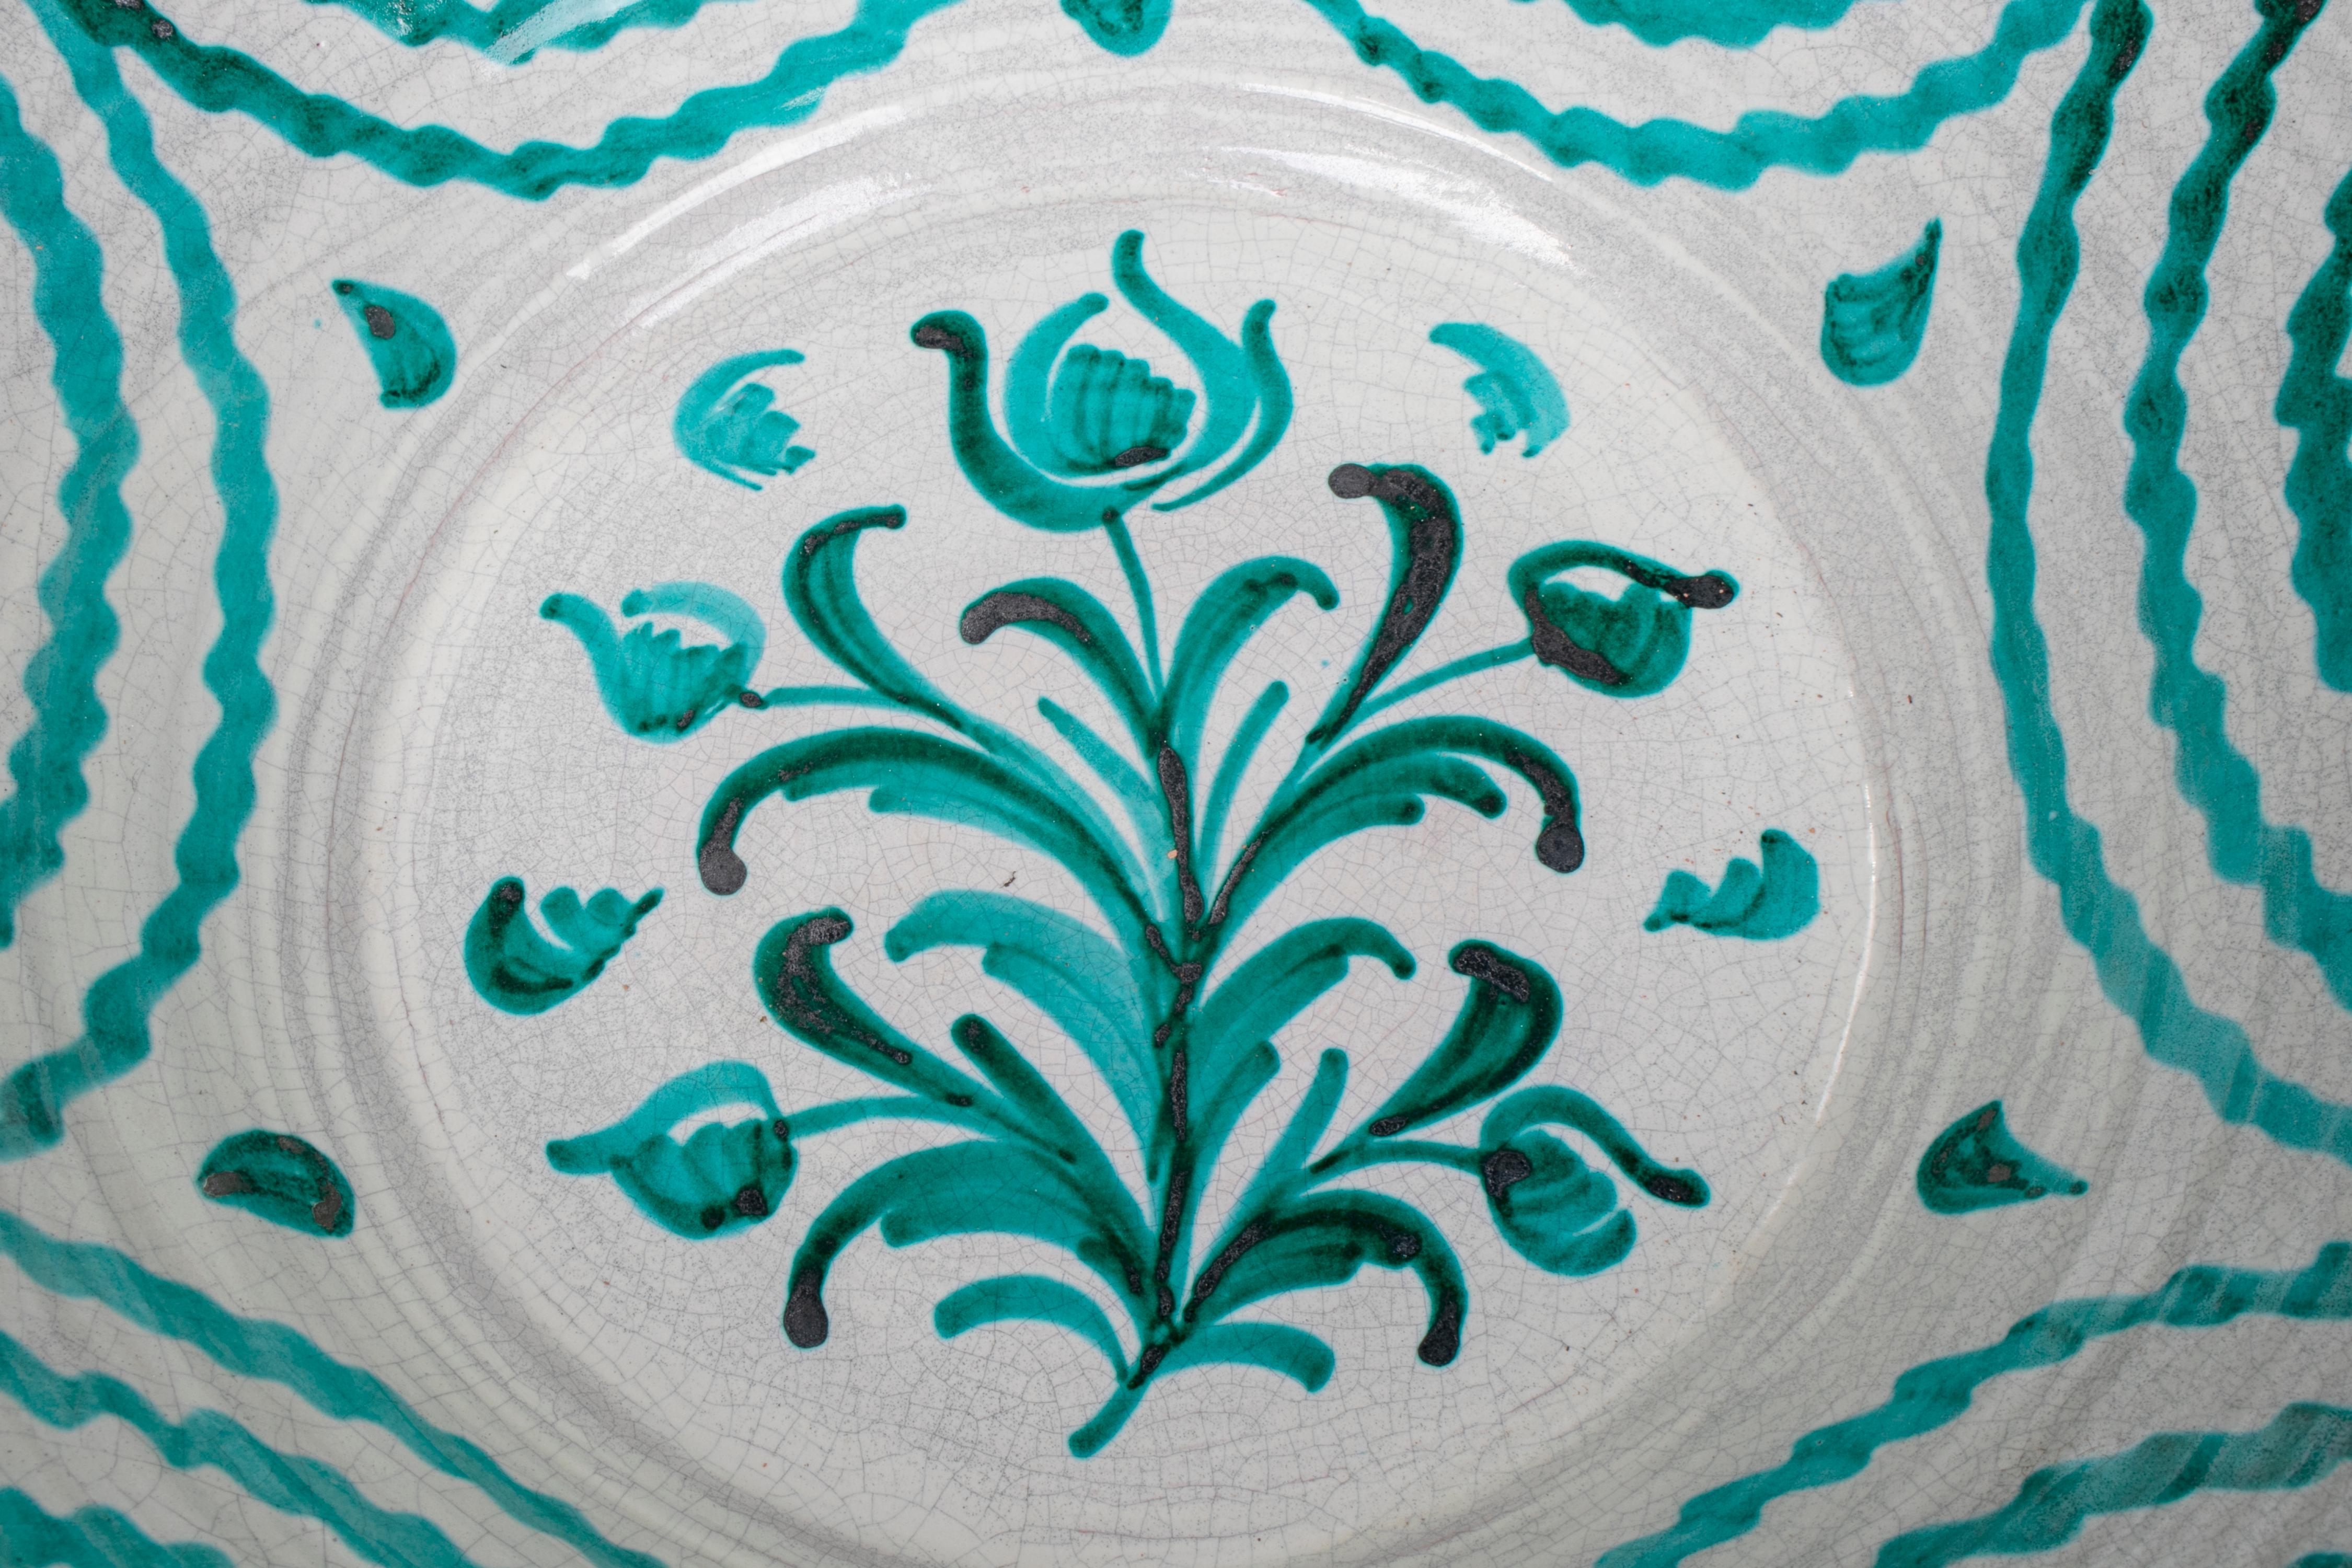 Große spanische handgefertigte und bemalte weiß-grün glasierte Terrakottaschale im typischen Stil von Granada.